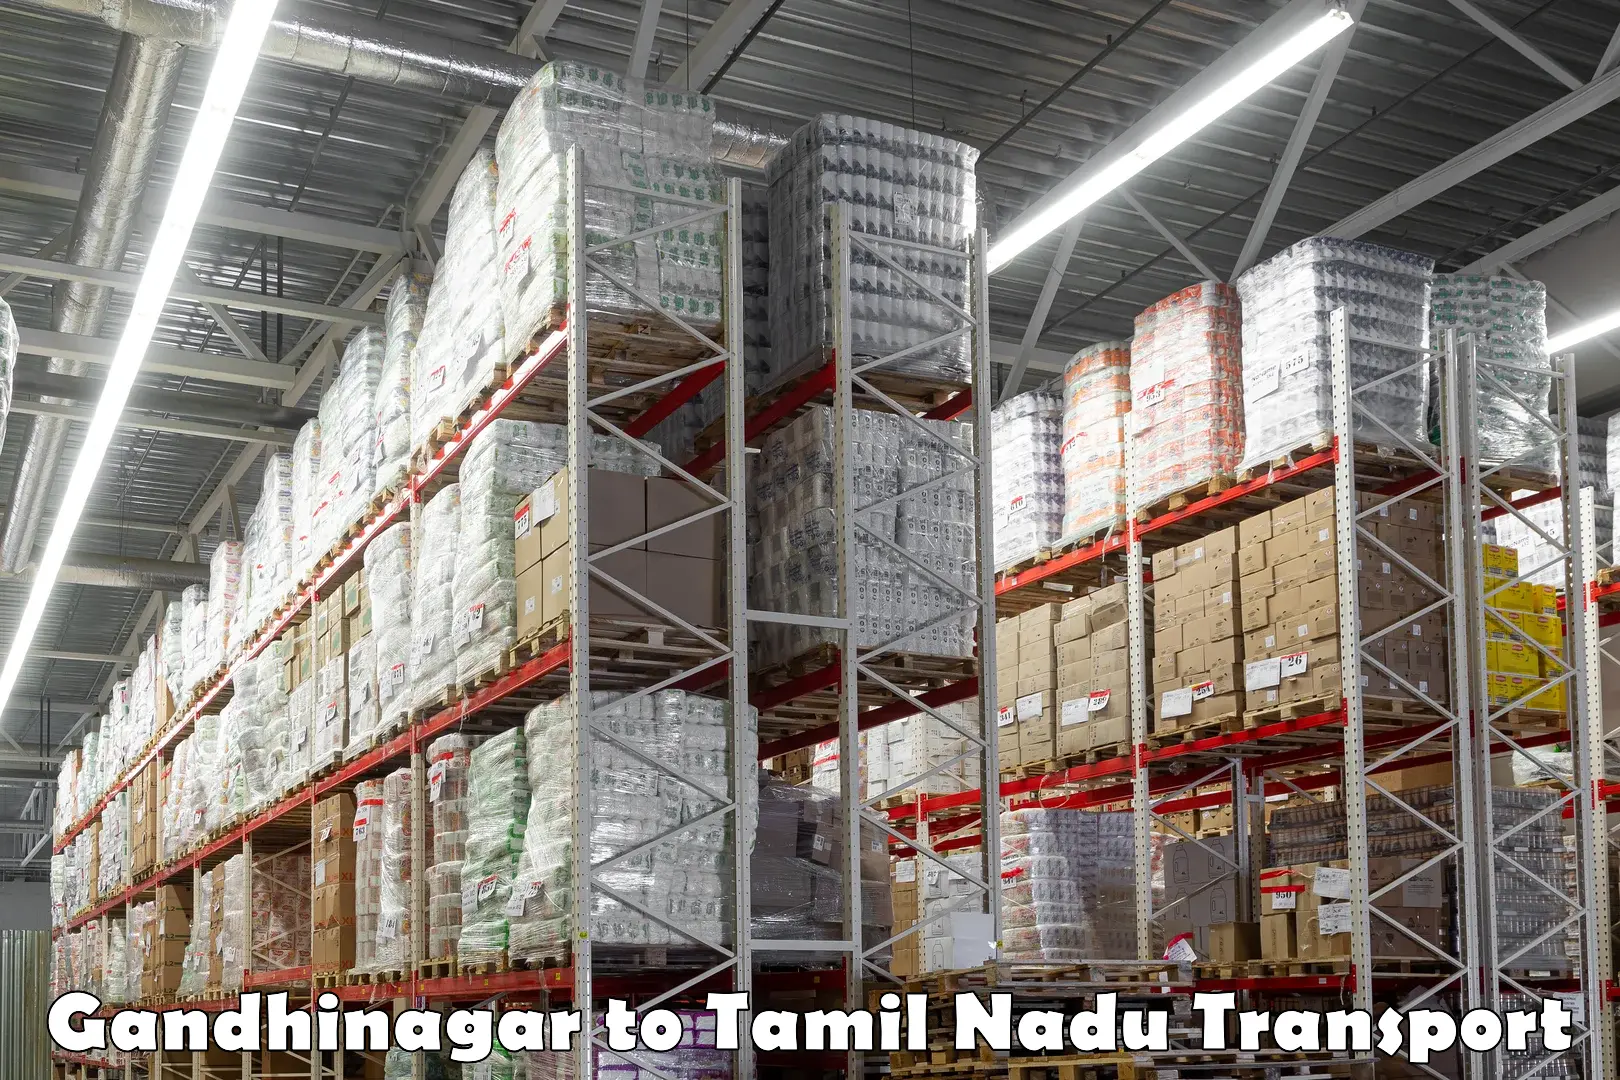 Air freight transport services Gandhinagar to Tamil Nadu